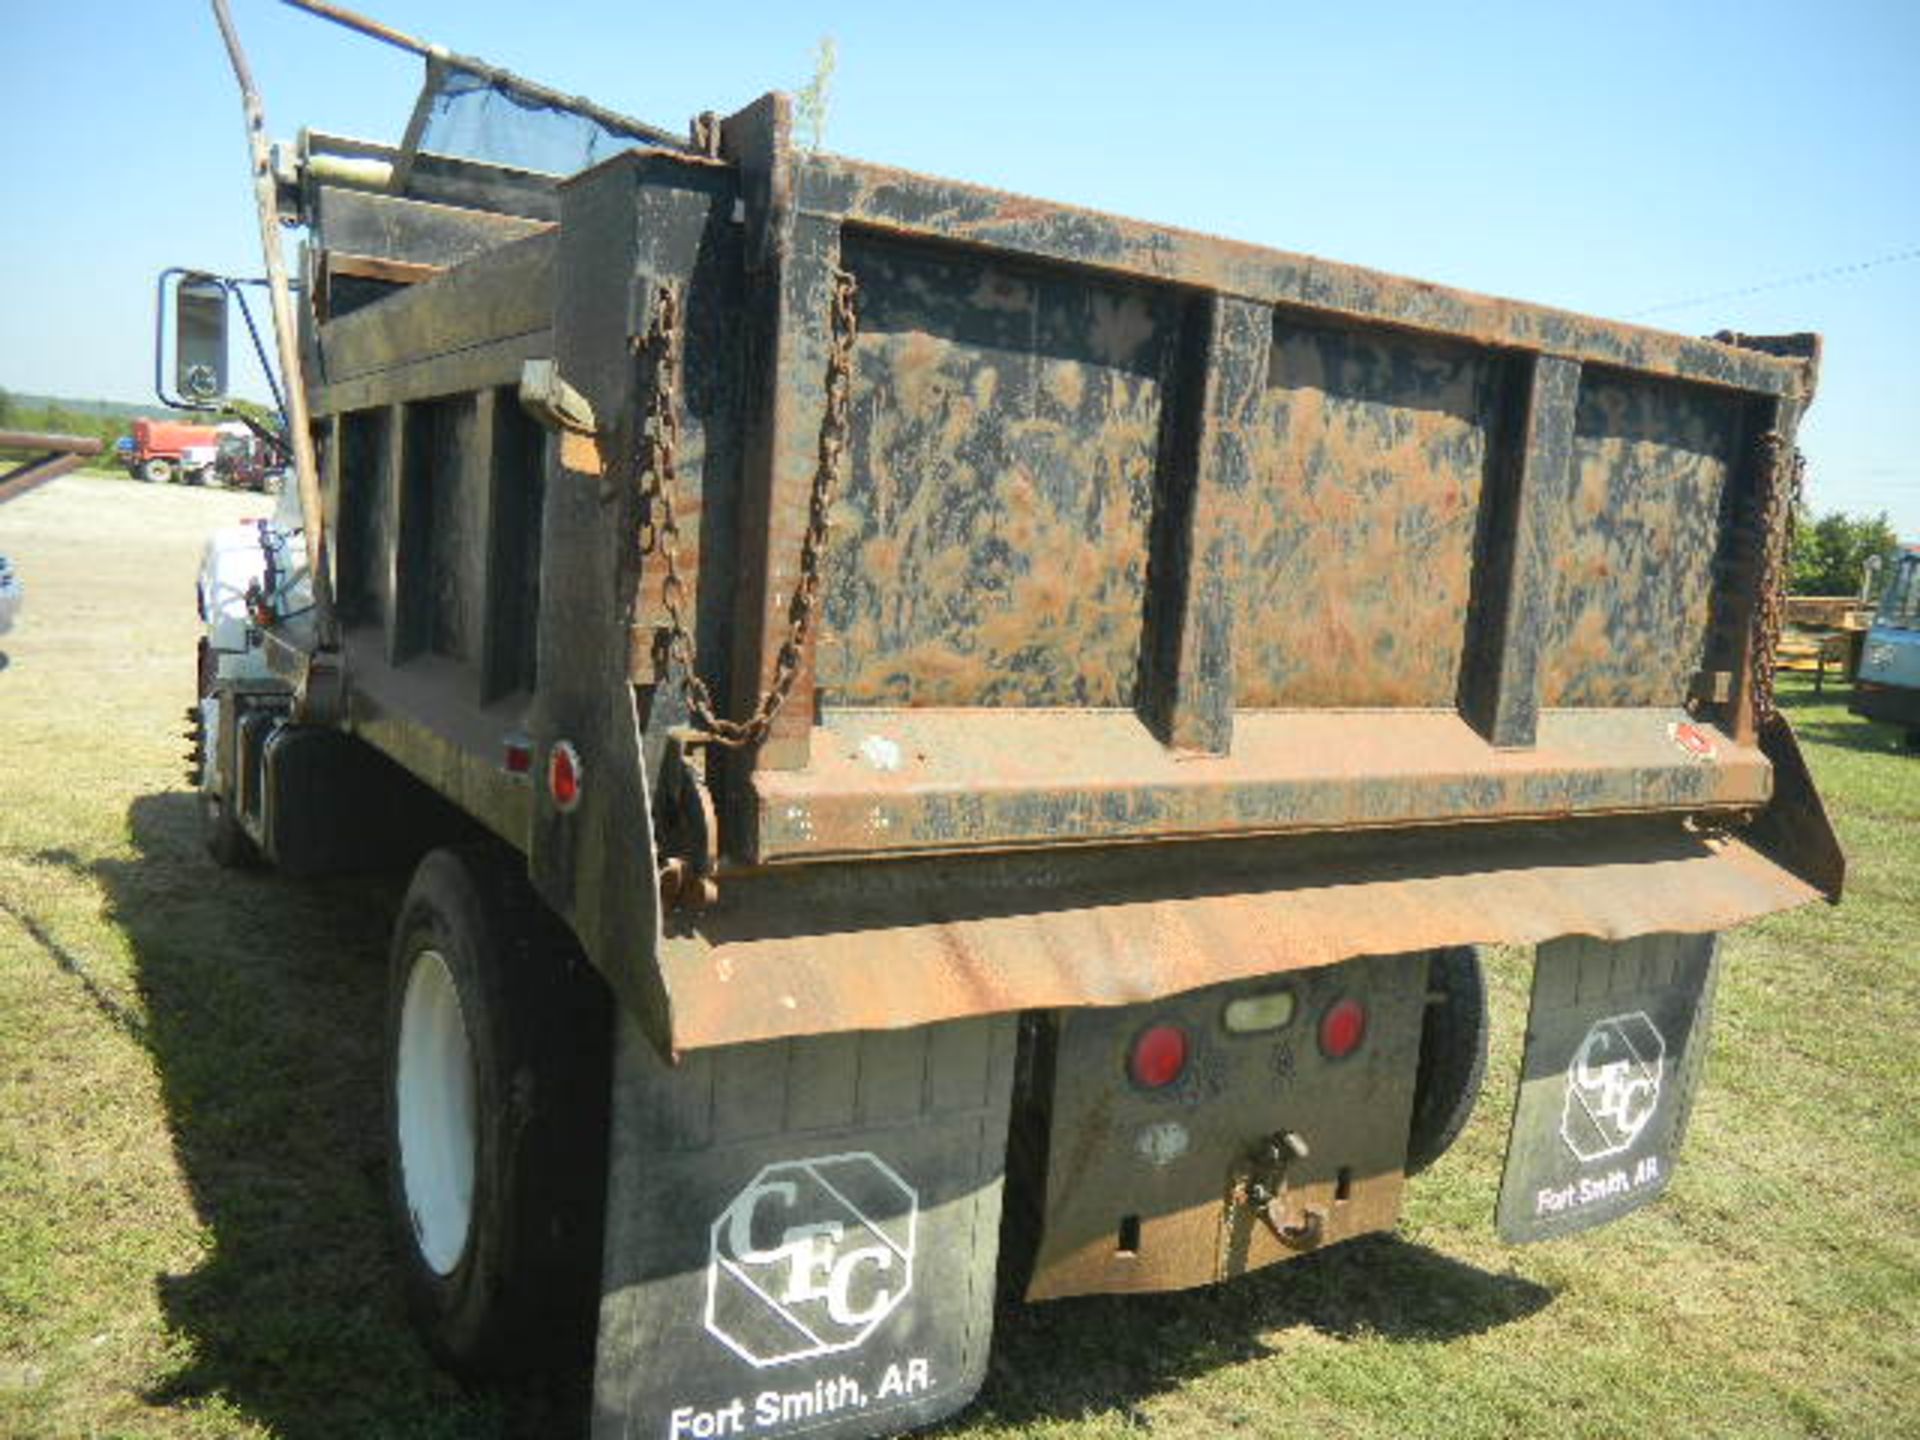 2000 GMC C7500 White 2 Ton Dump Truck - Asset I.D. #779 - Last of Vin (J503553) - Image 5 of 8